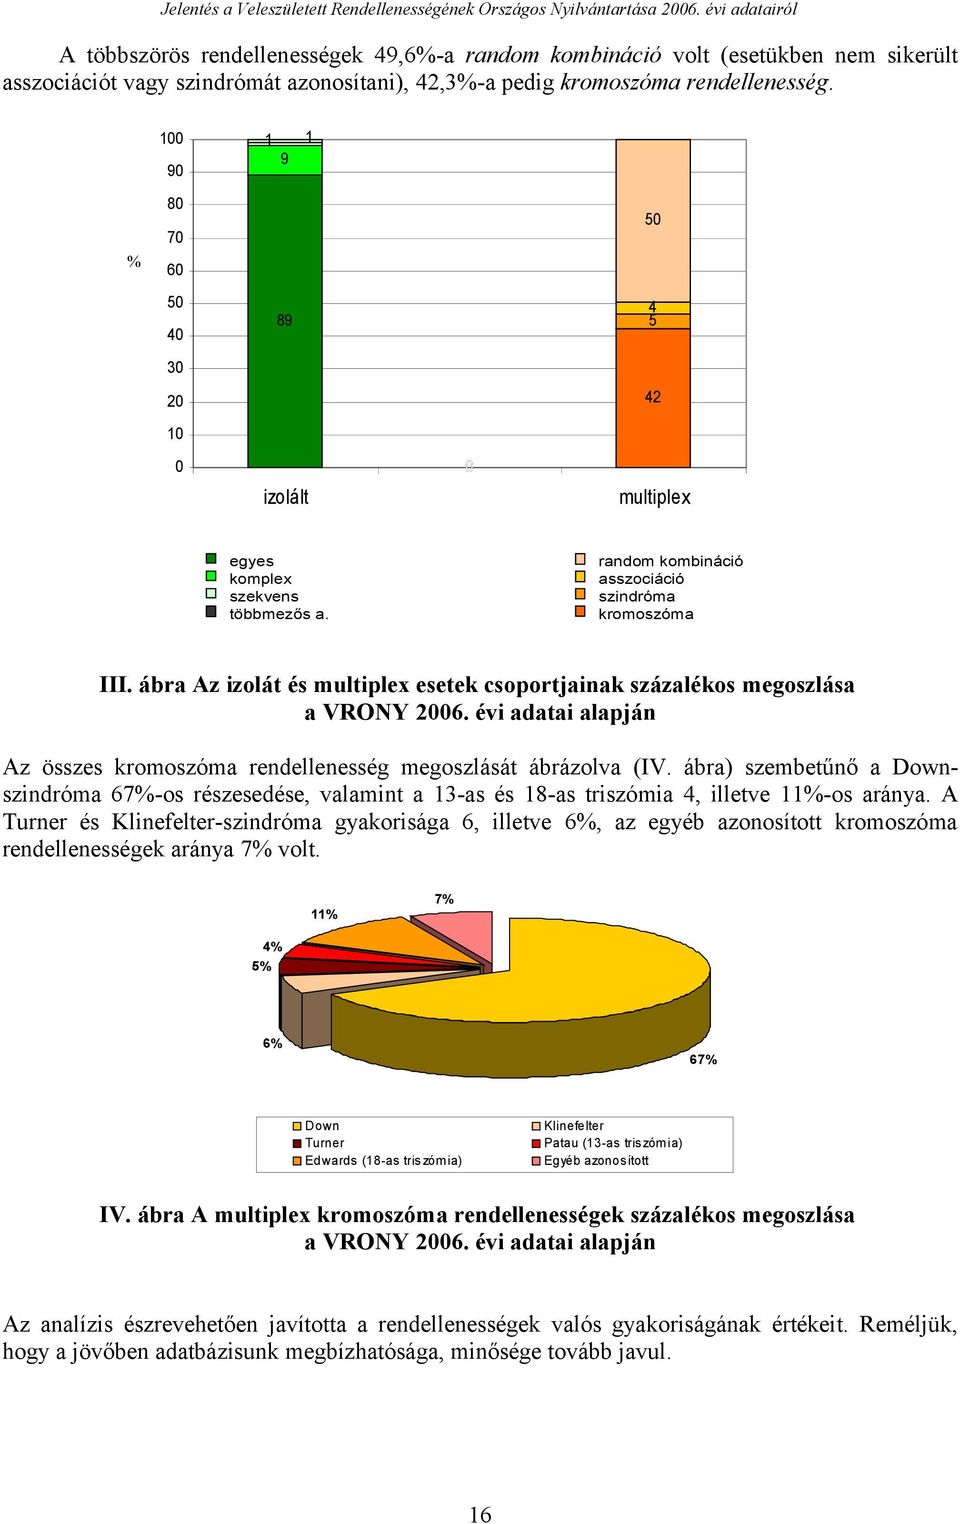 8 % 8 izolált multiplex egyes komplex szekvens többmezős a. random kombináció asszociáció szindróma kromoszóma III. ábra Az izolát és multiplex esetek csoportjainak százalékos megoszlása a VRONY.